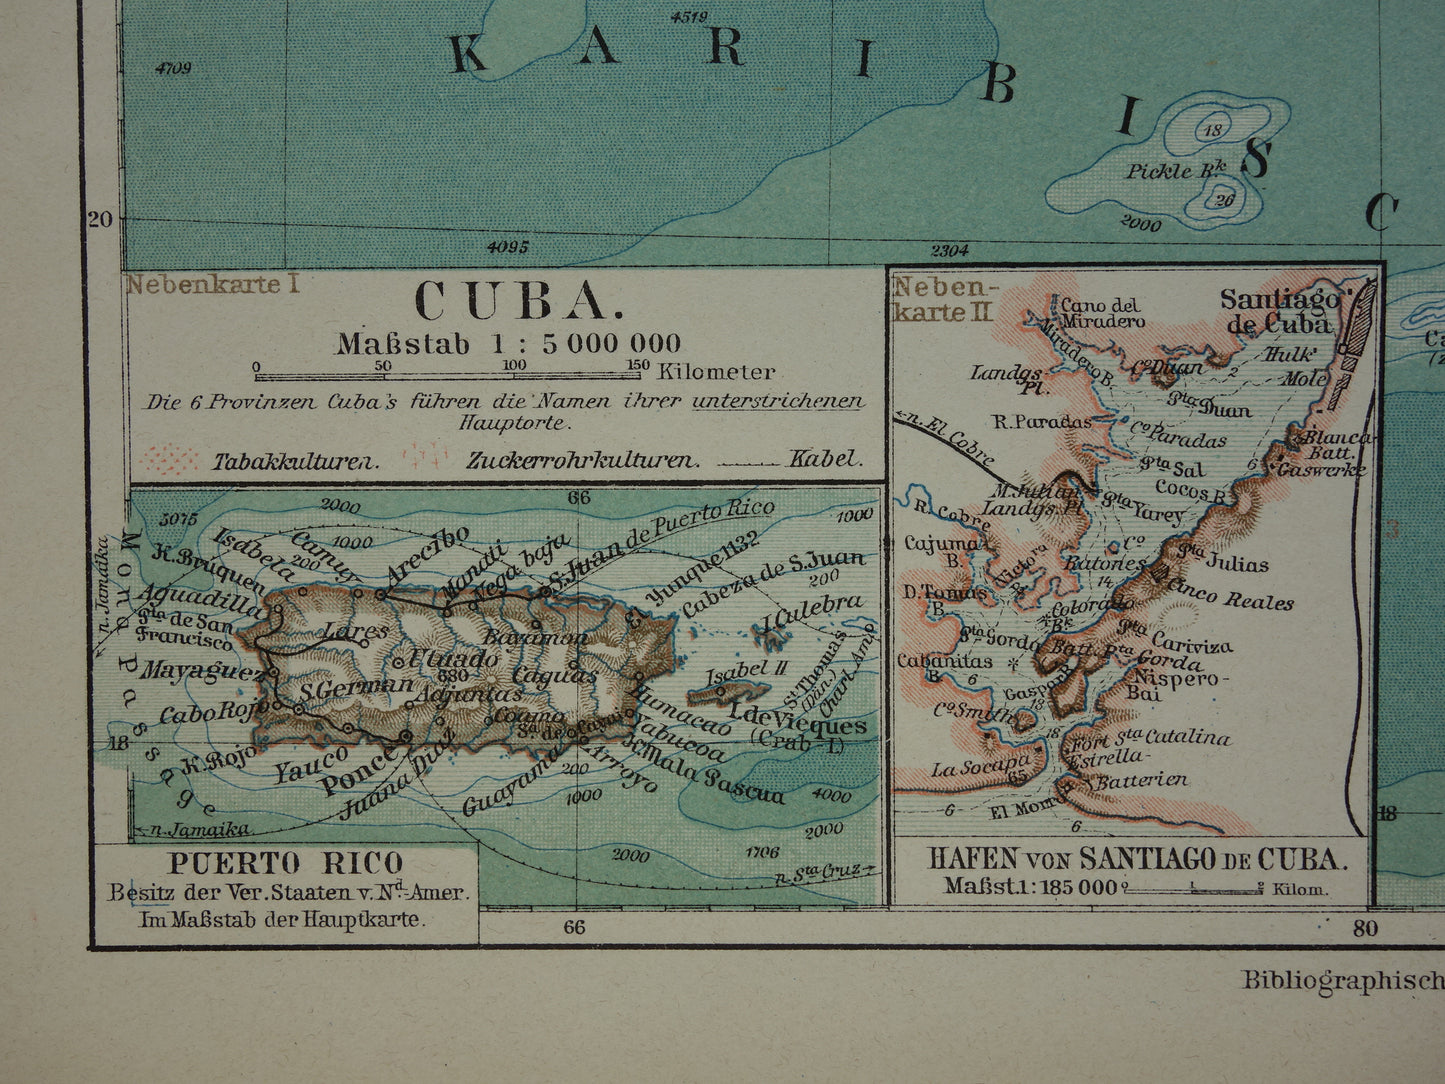 CUBA oude kaart uit 1905 van Cuba en Jamaica originele kleine antieke Duitse landkaart